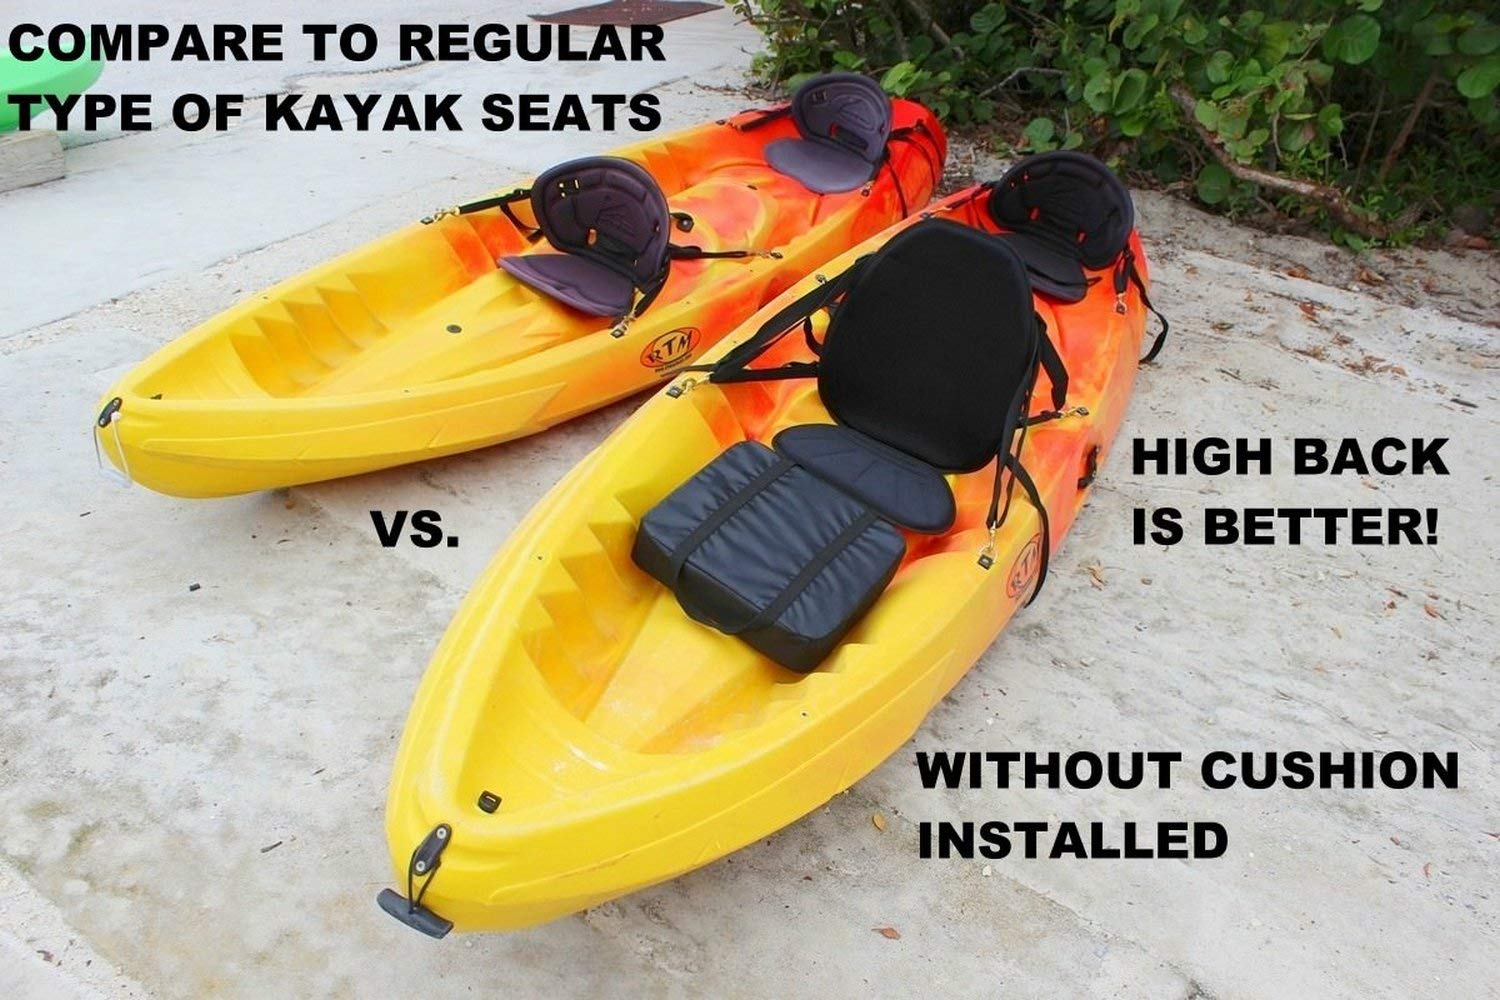 Nicknocks 2pcs Inflatable Seat Cushion Kayak Boating Seat for Camping Hiking Fishing 